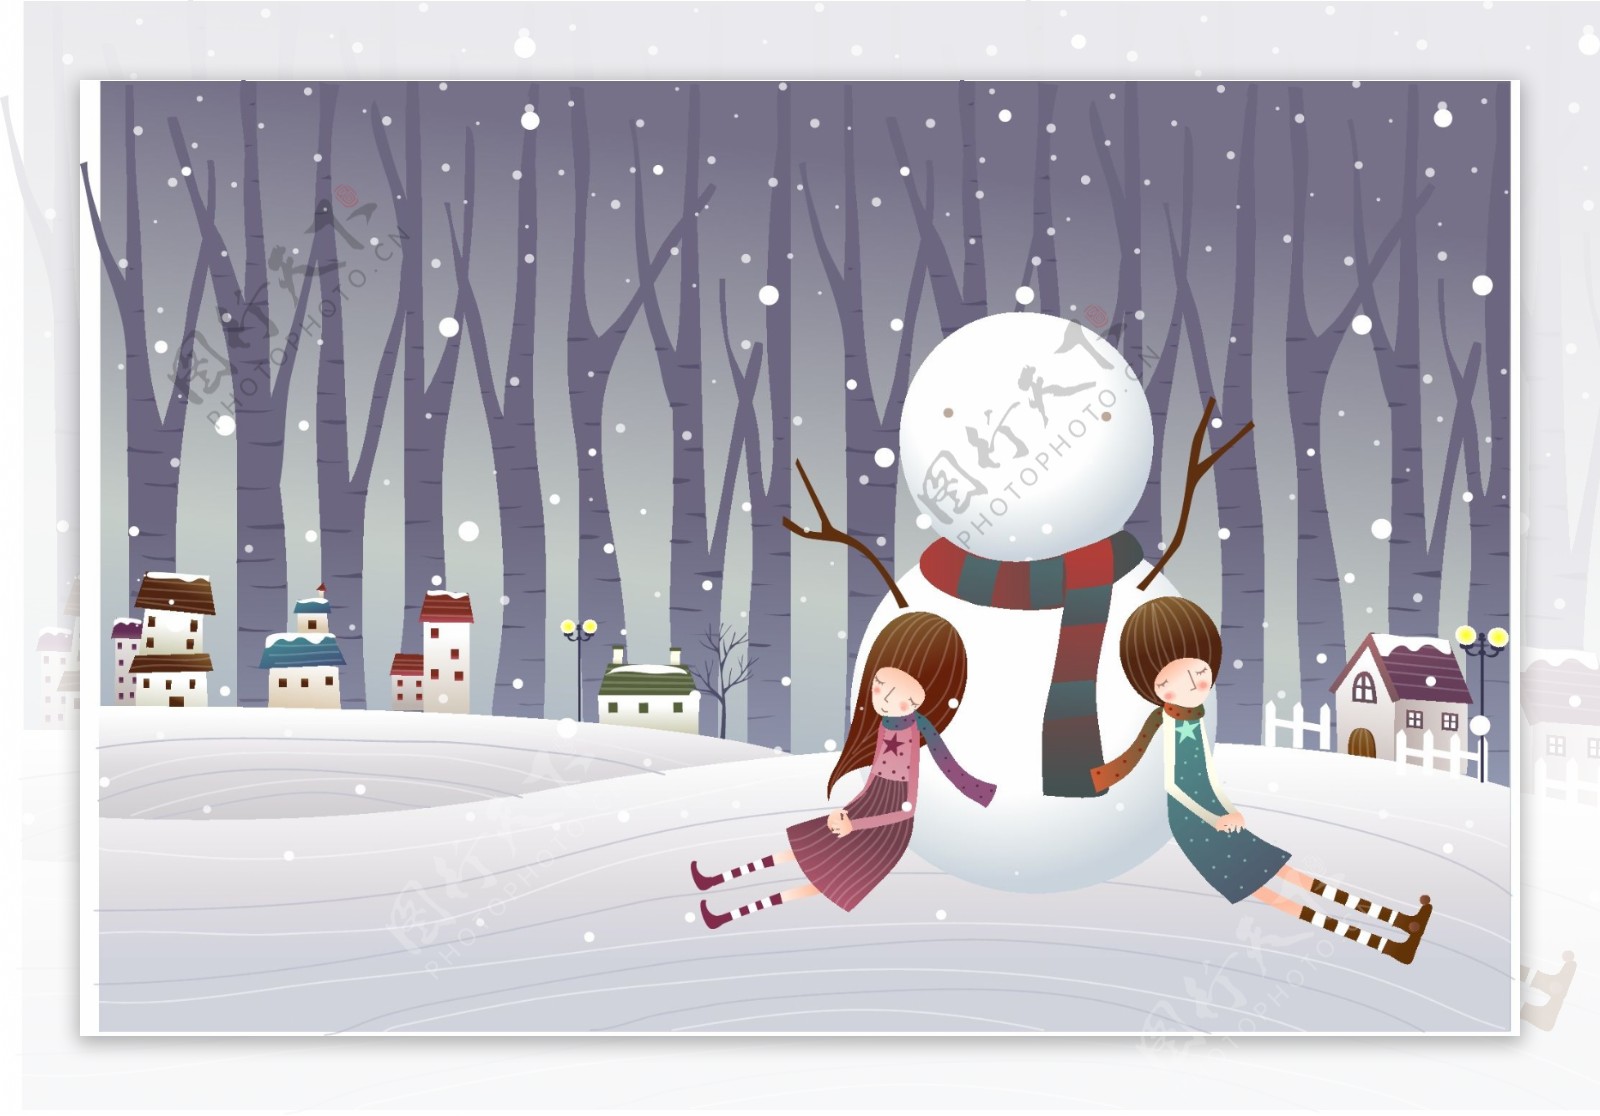 情侣靠在雪球上